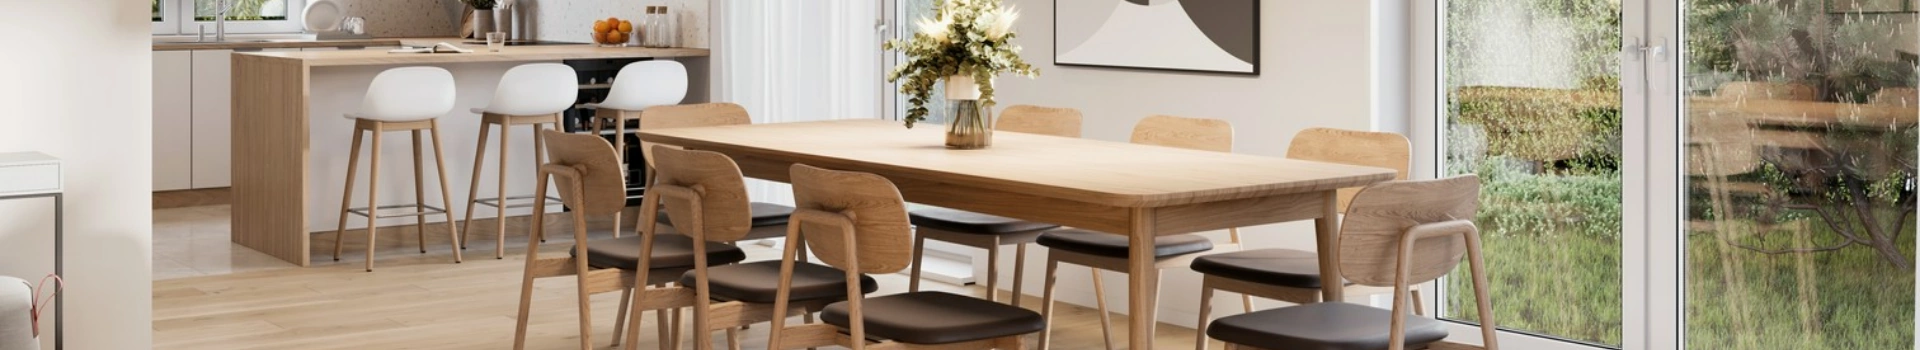 drewniany stół i krzesła